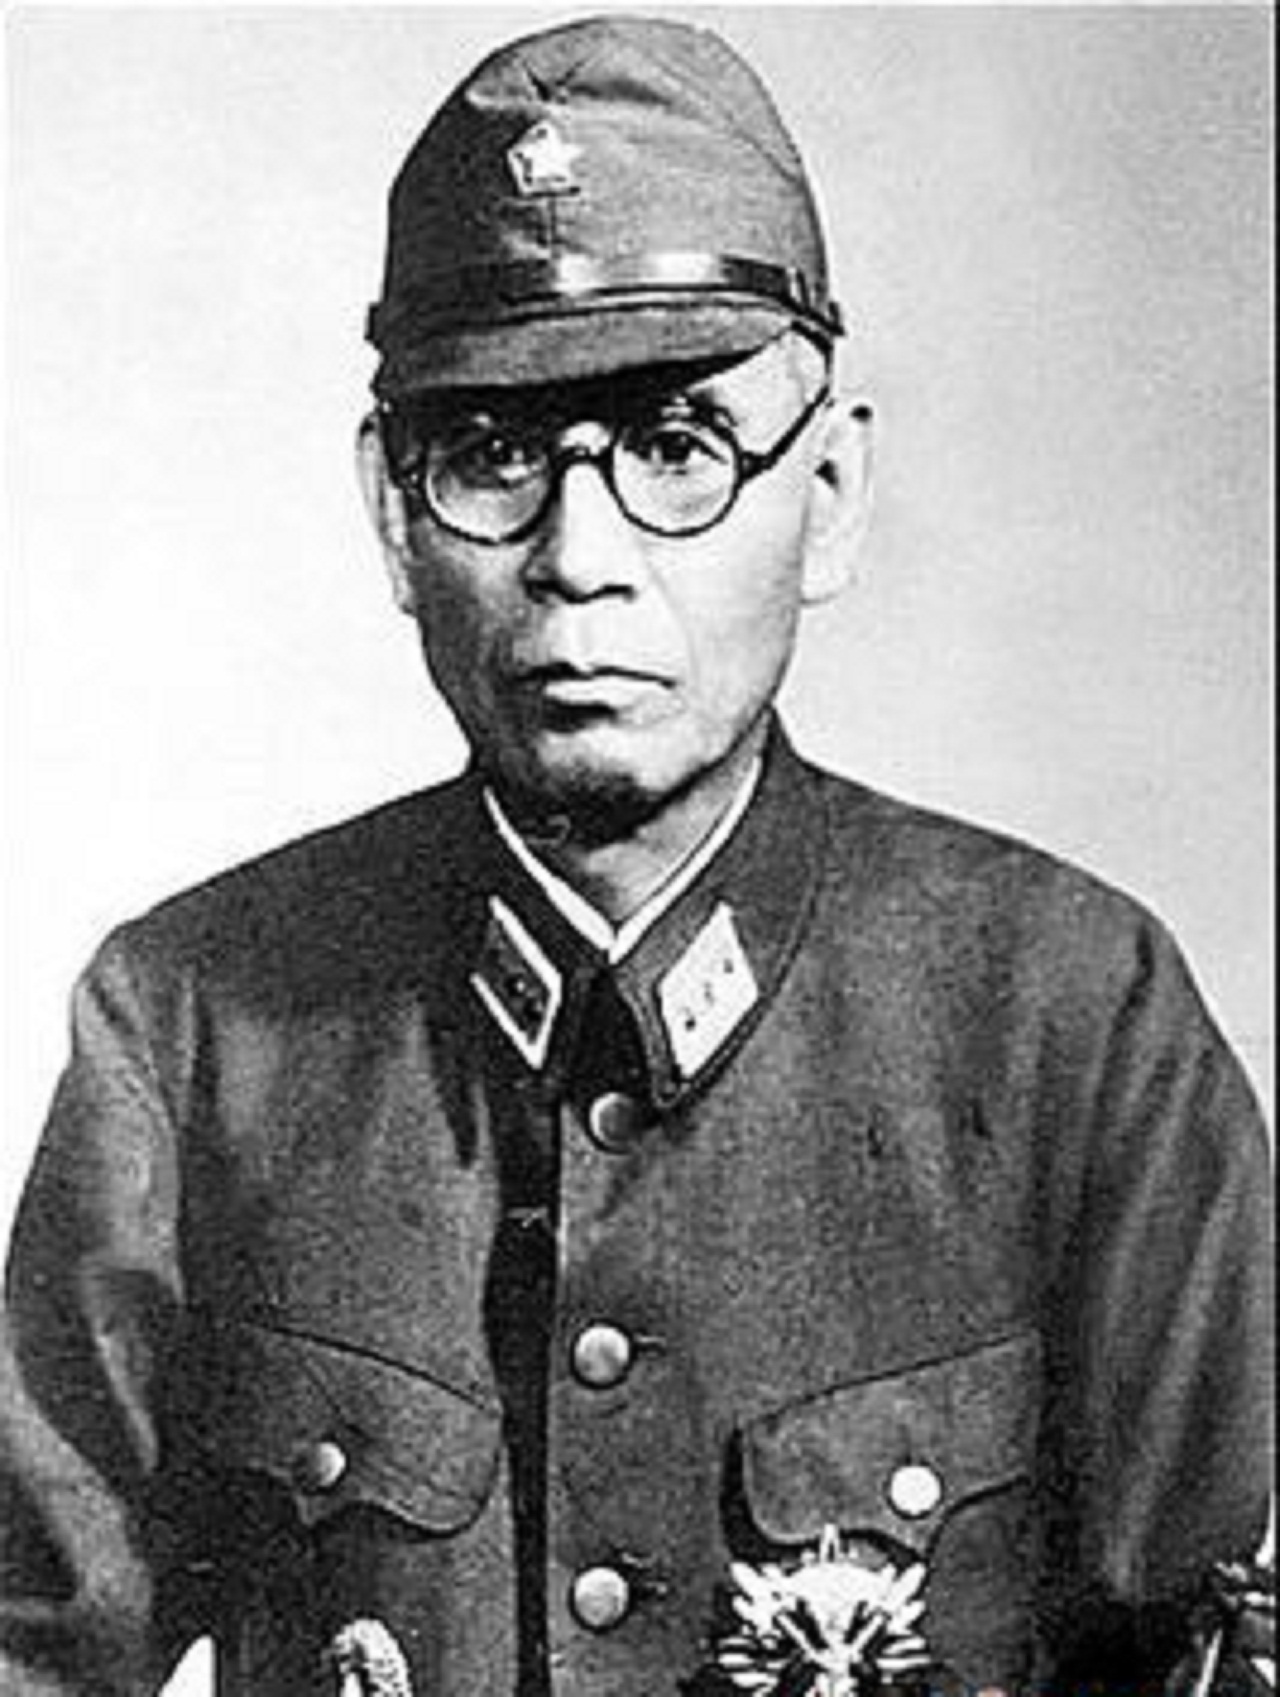 卢沟桥事件后任日本华北派遣军首任司令官,一再突破大本营限制占领